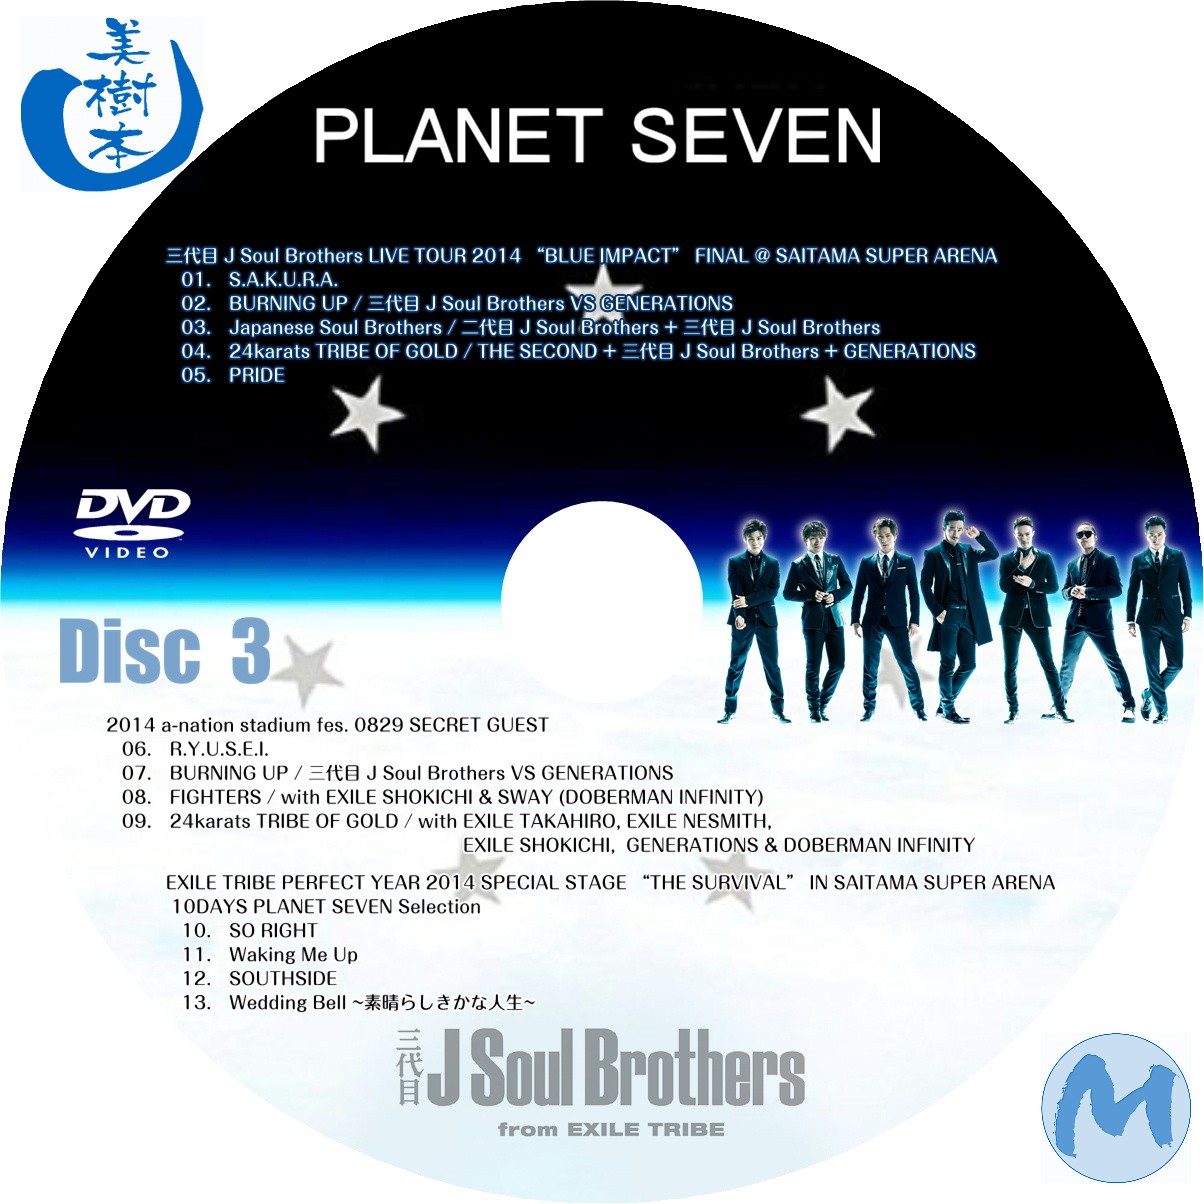 三代目 J Soul Brothers〈CD・DVD・写真集他〉限定値下げ❗ - 邦楽